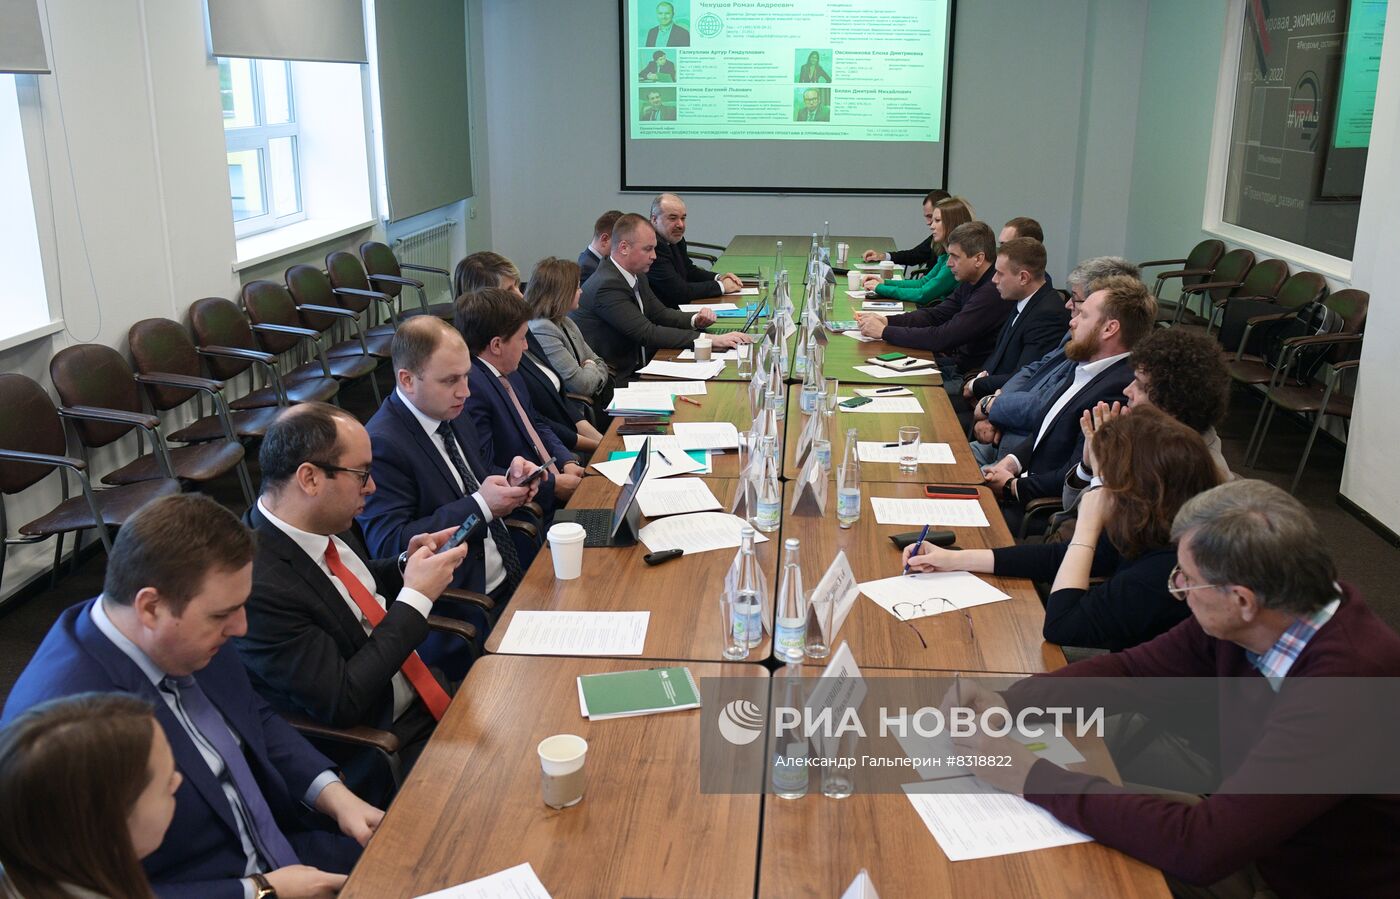 Семинар-совещание с участниками проекта "Экспортный акселератор" в Санкт-Петербурге